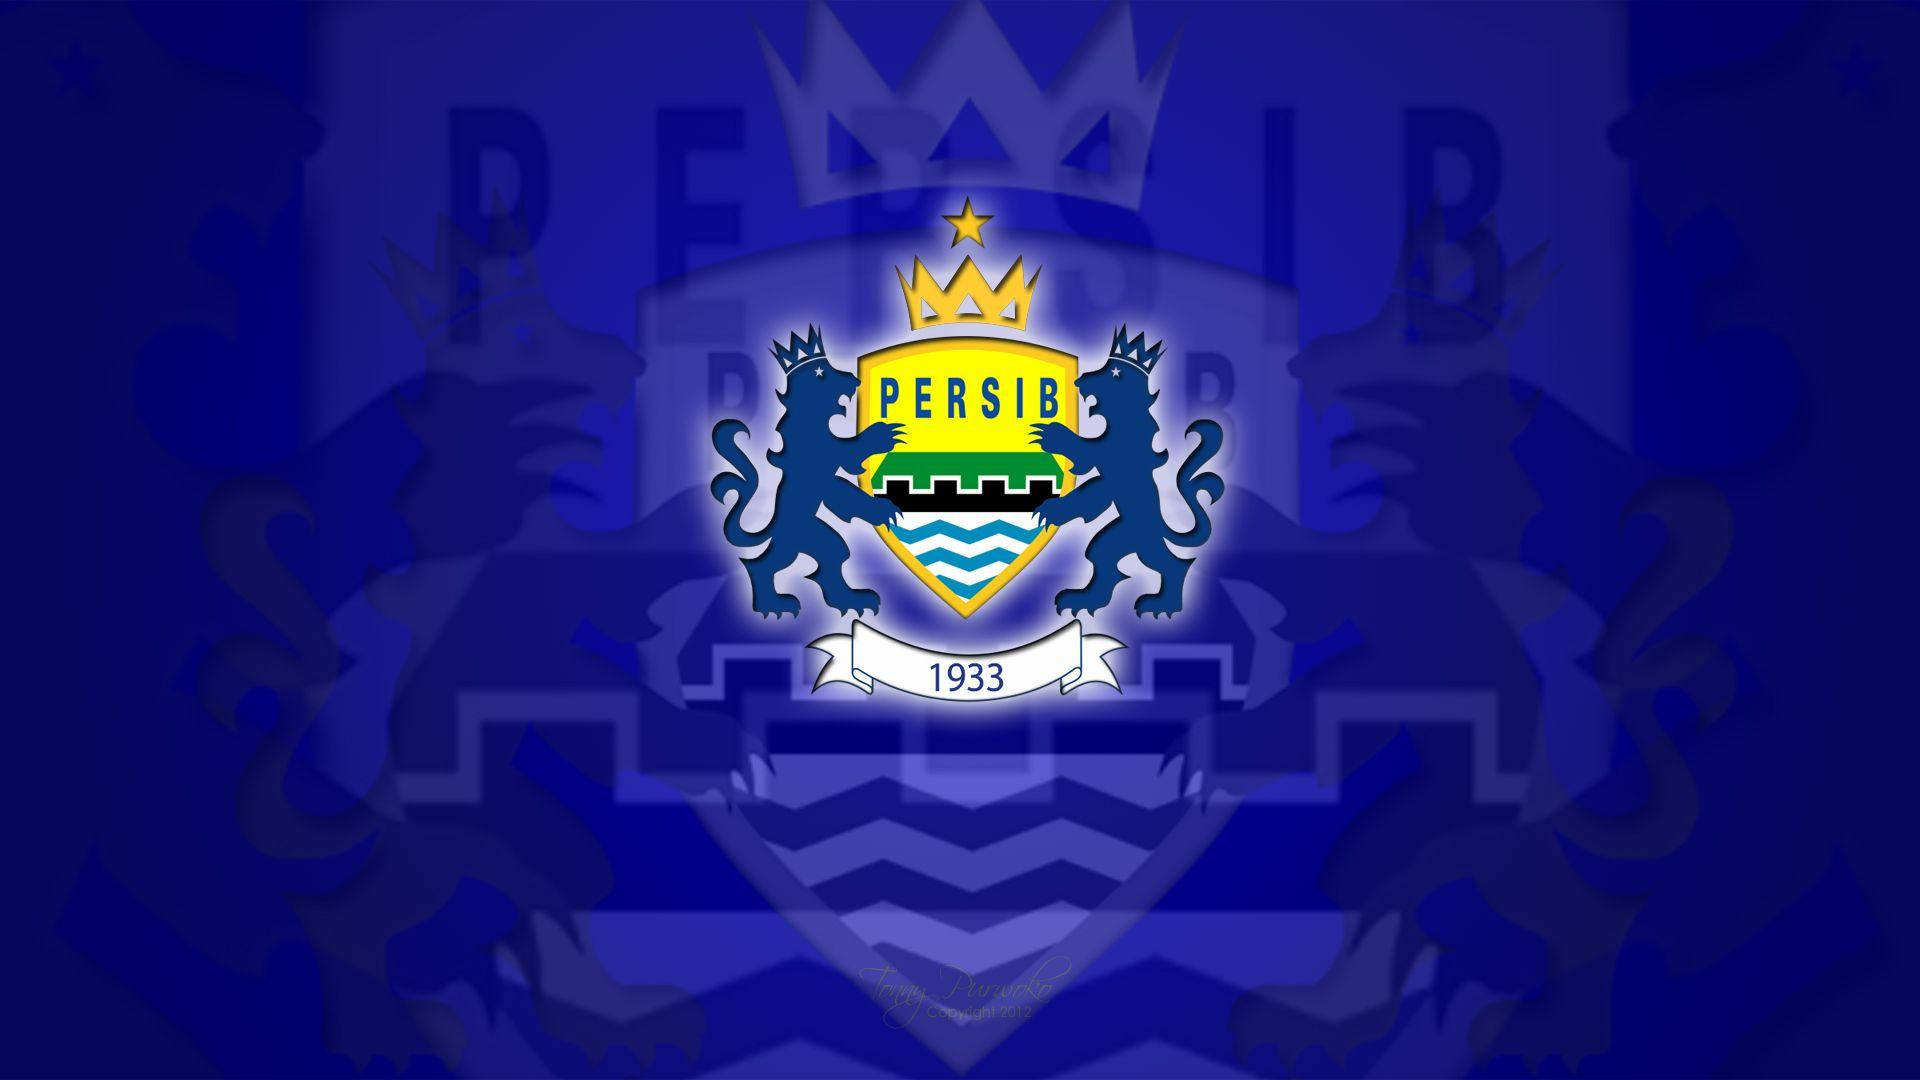 Persib Bandung Crown And Lions Wallpaper